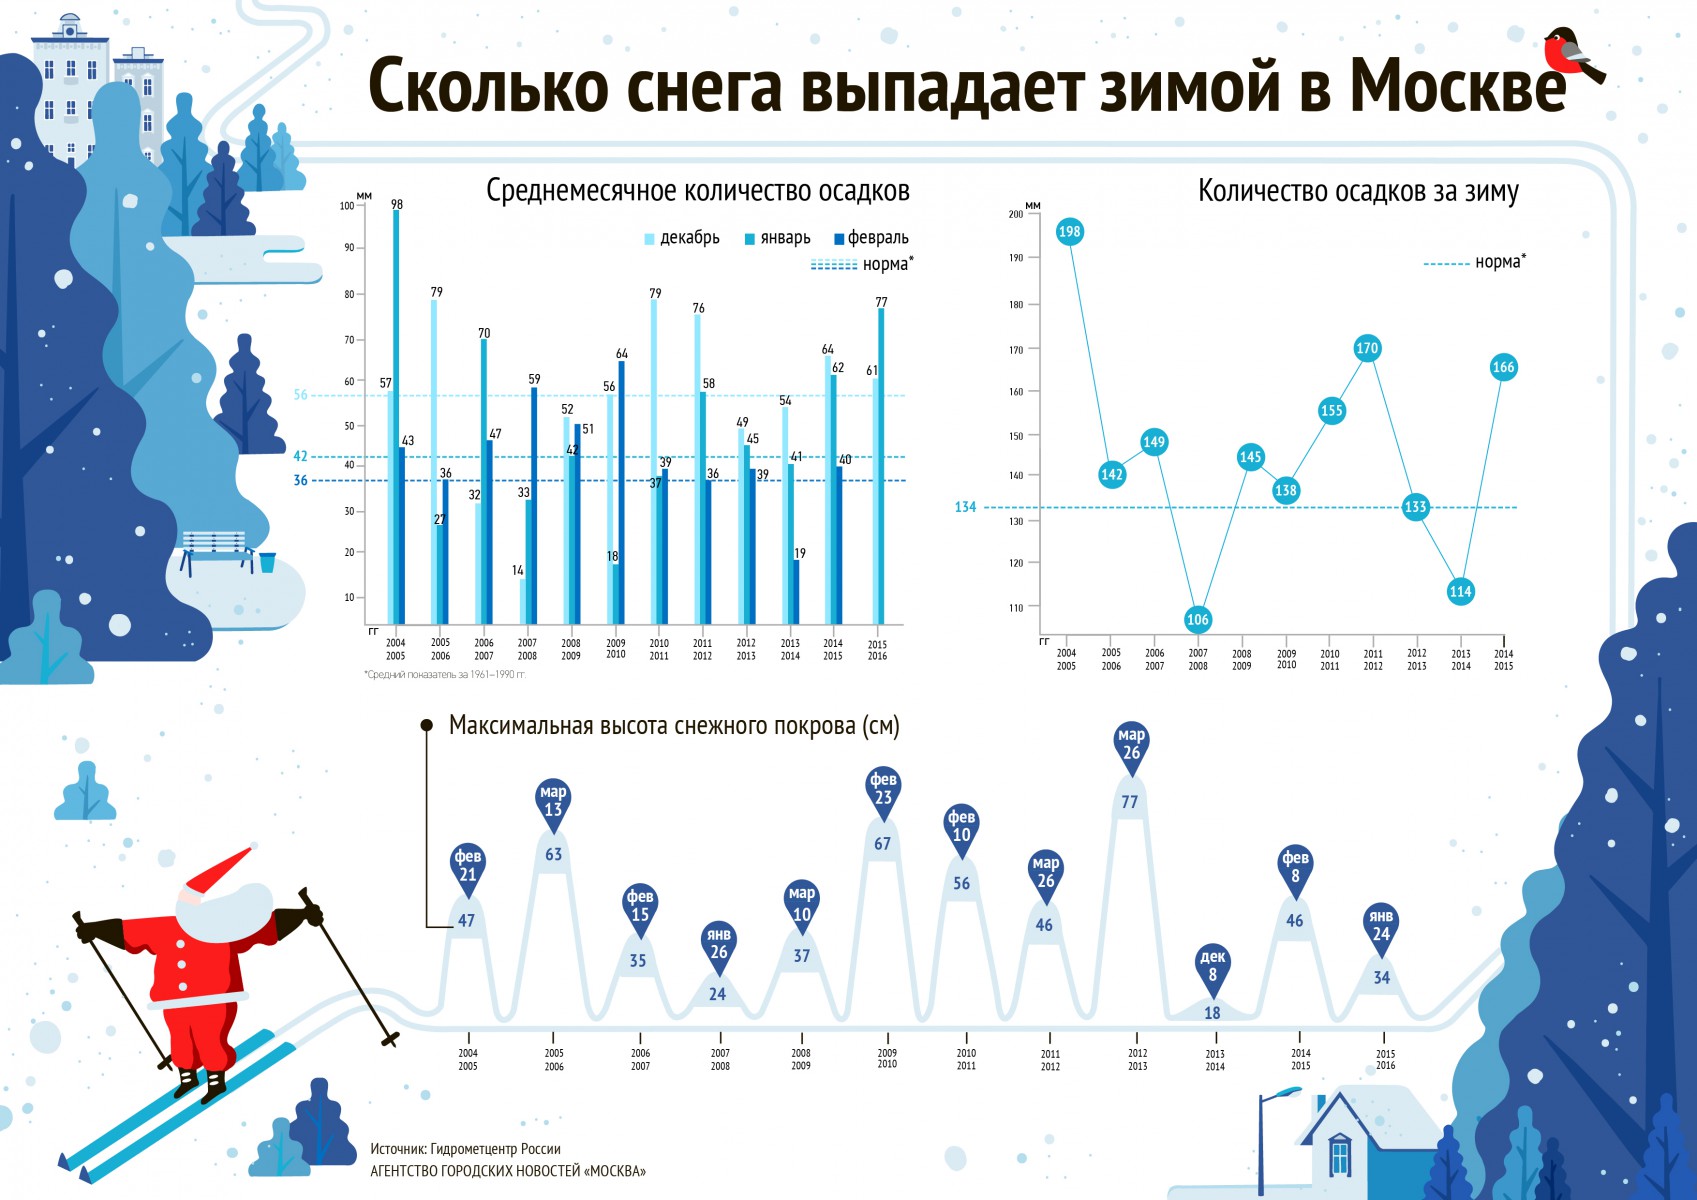 Сколько в москве. Мм осадков это сколько снега. Количество выпавшего снега в Москве по годам. Статистика выпадения снега. Сколько снега выпадает за зиму в Москве.